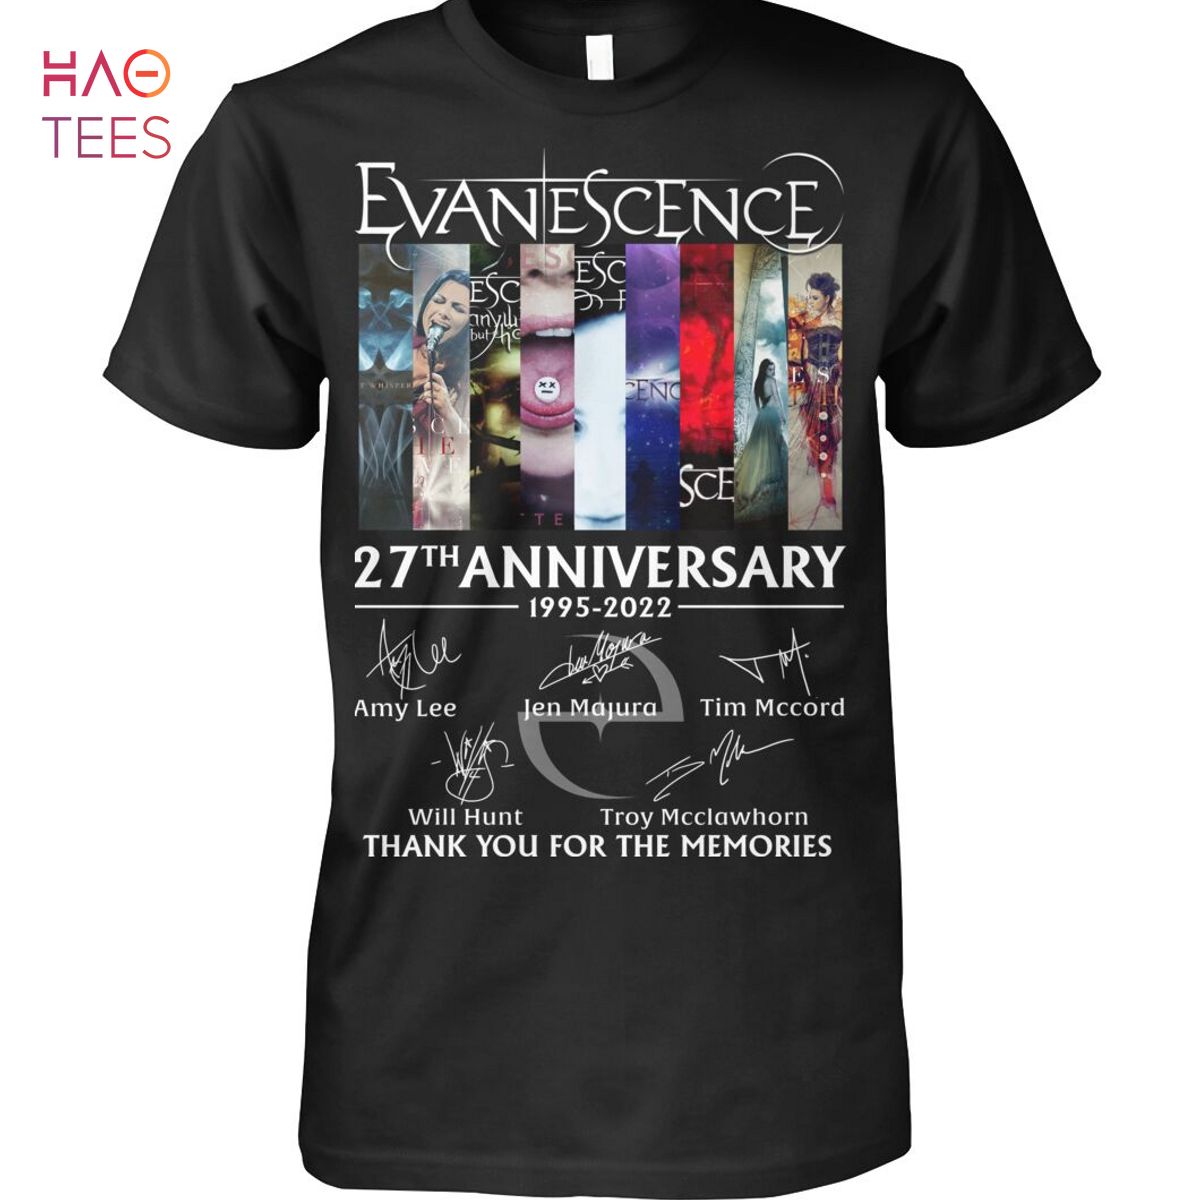 Evanescence 27 Anniversary 1995-2022 Shirt